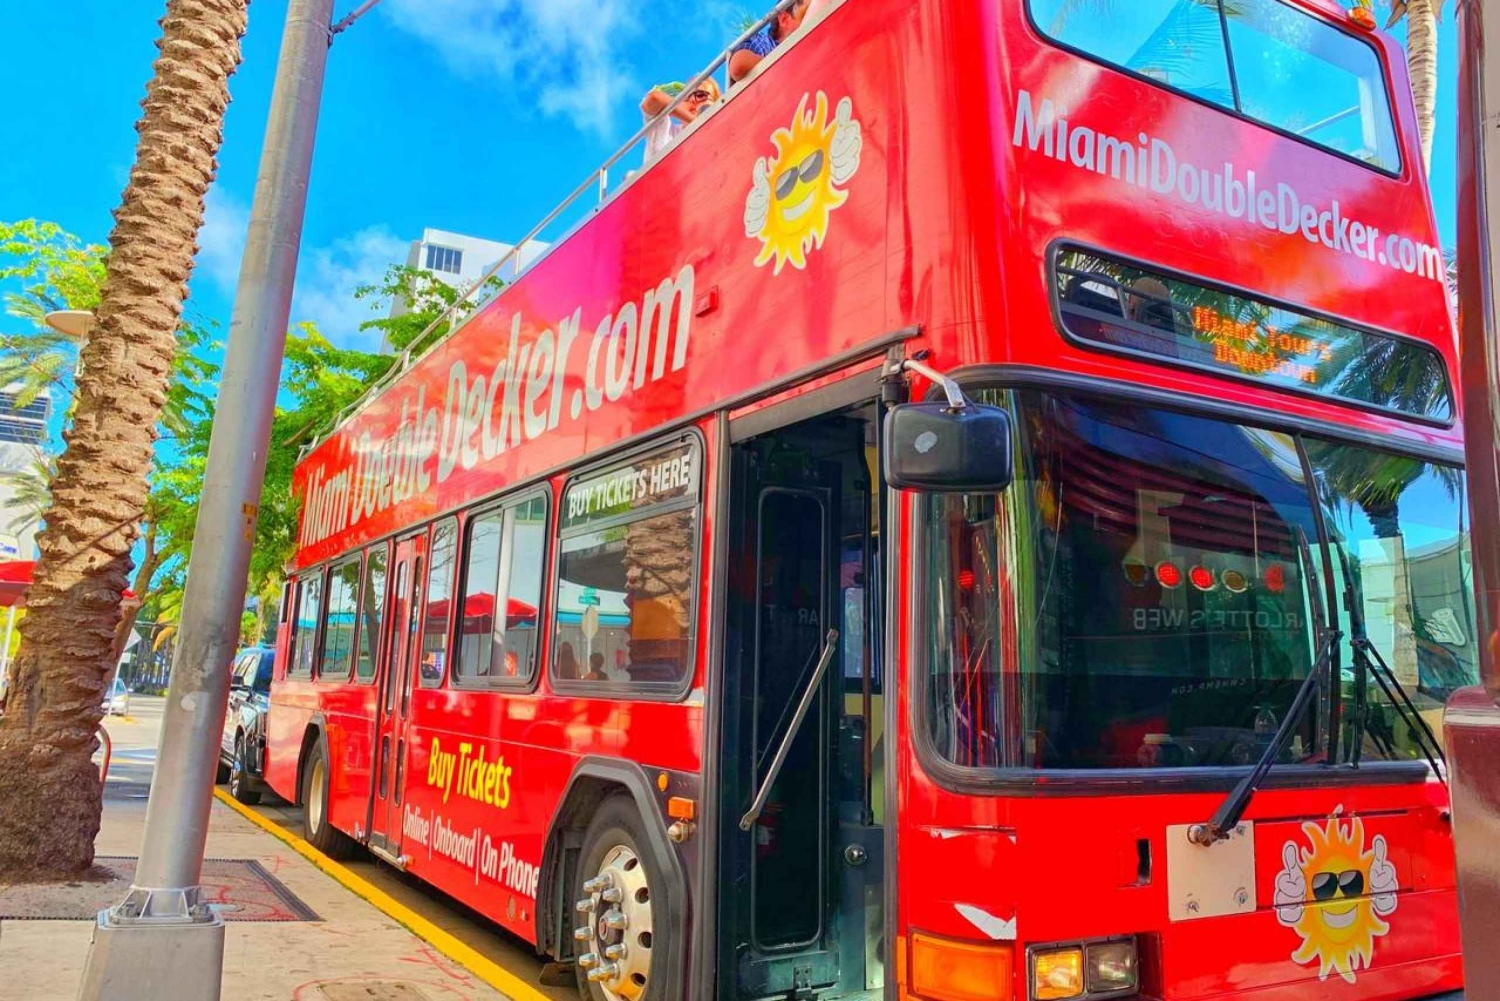 Miami: Wycieczka piętrowym autobusem z opcjonalnym rejsem wycieczkowym